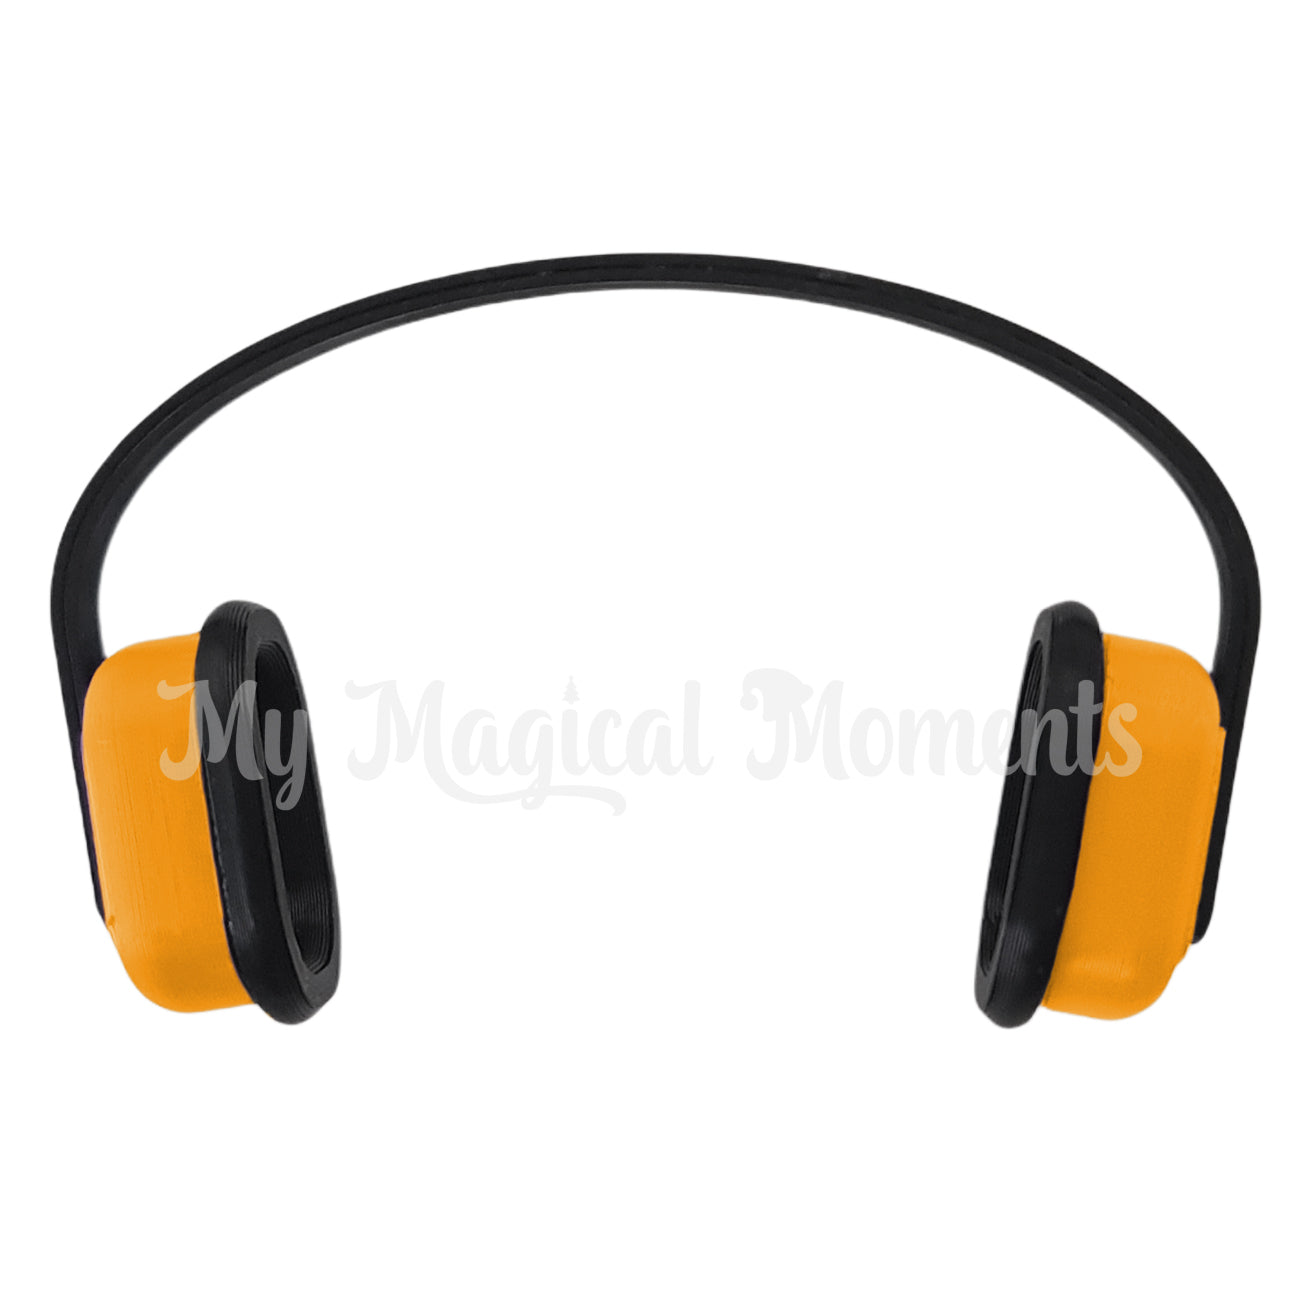 Elf Sized sensory headphones - Orange